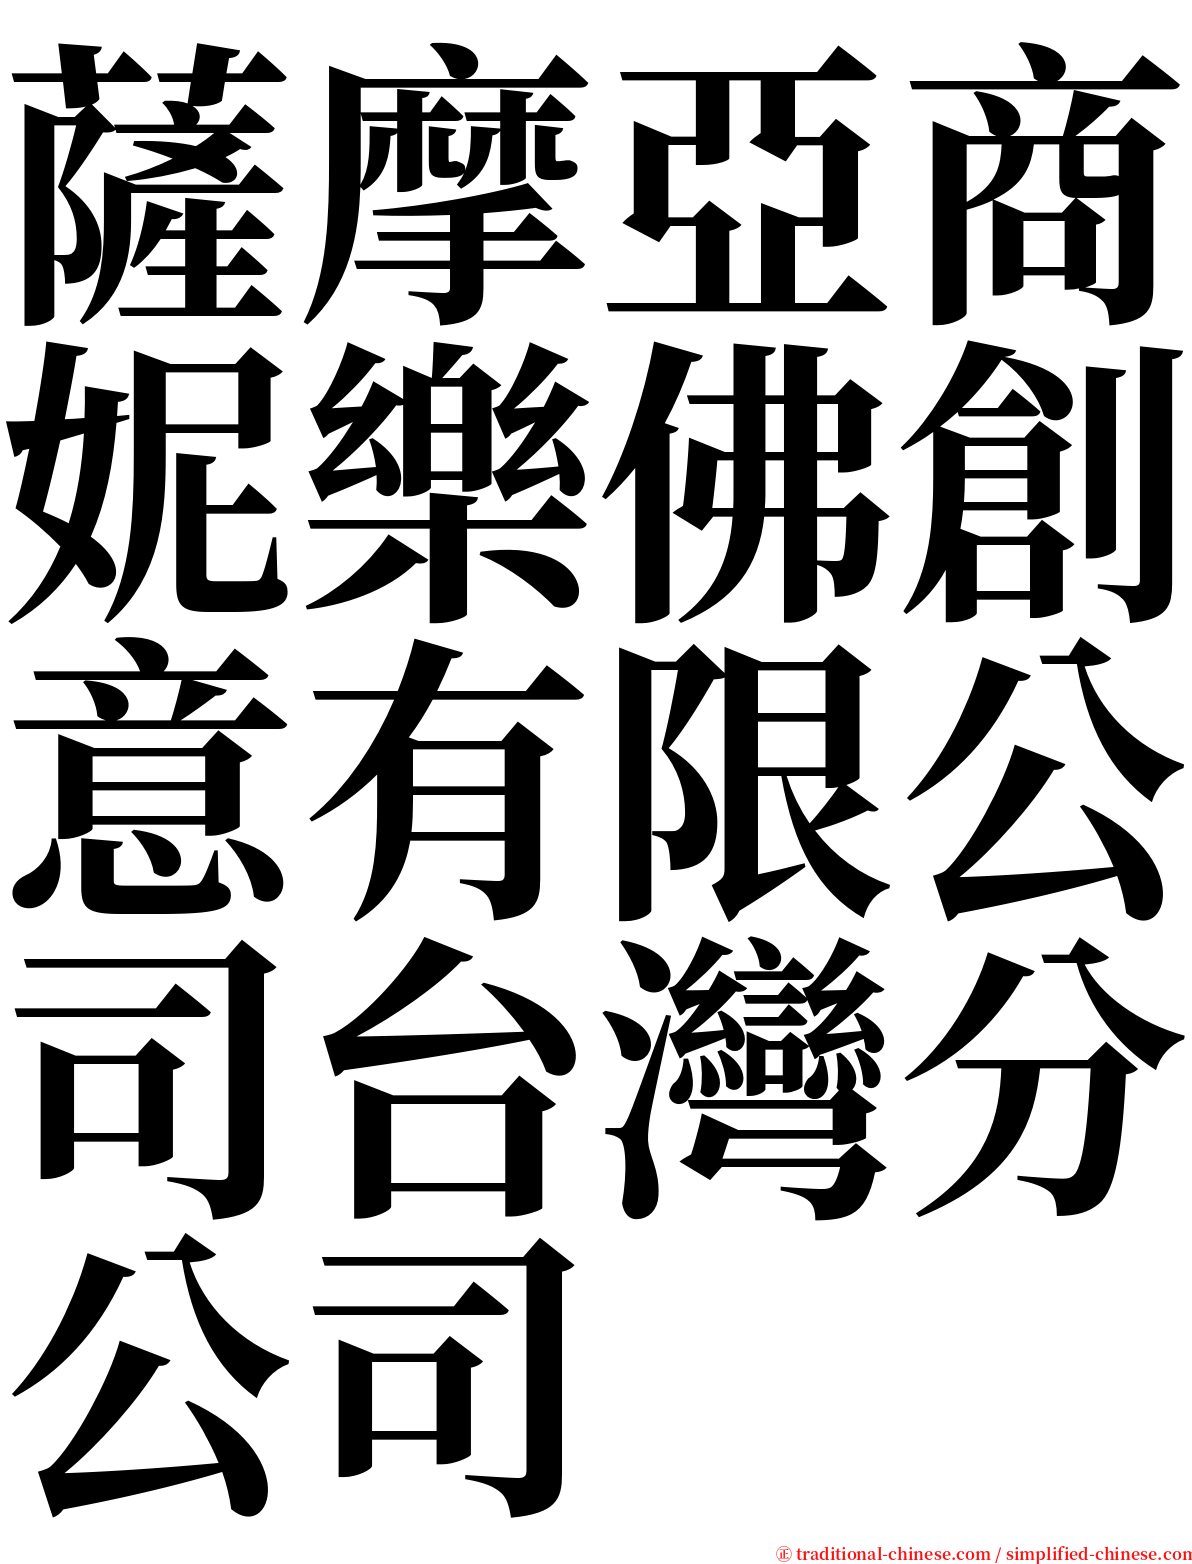 薩摩亞商妮樂佛創意有限公司台灣分公司 serif font